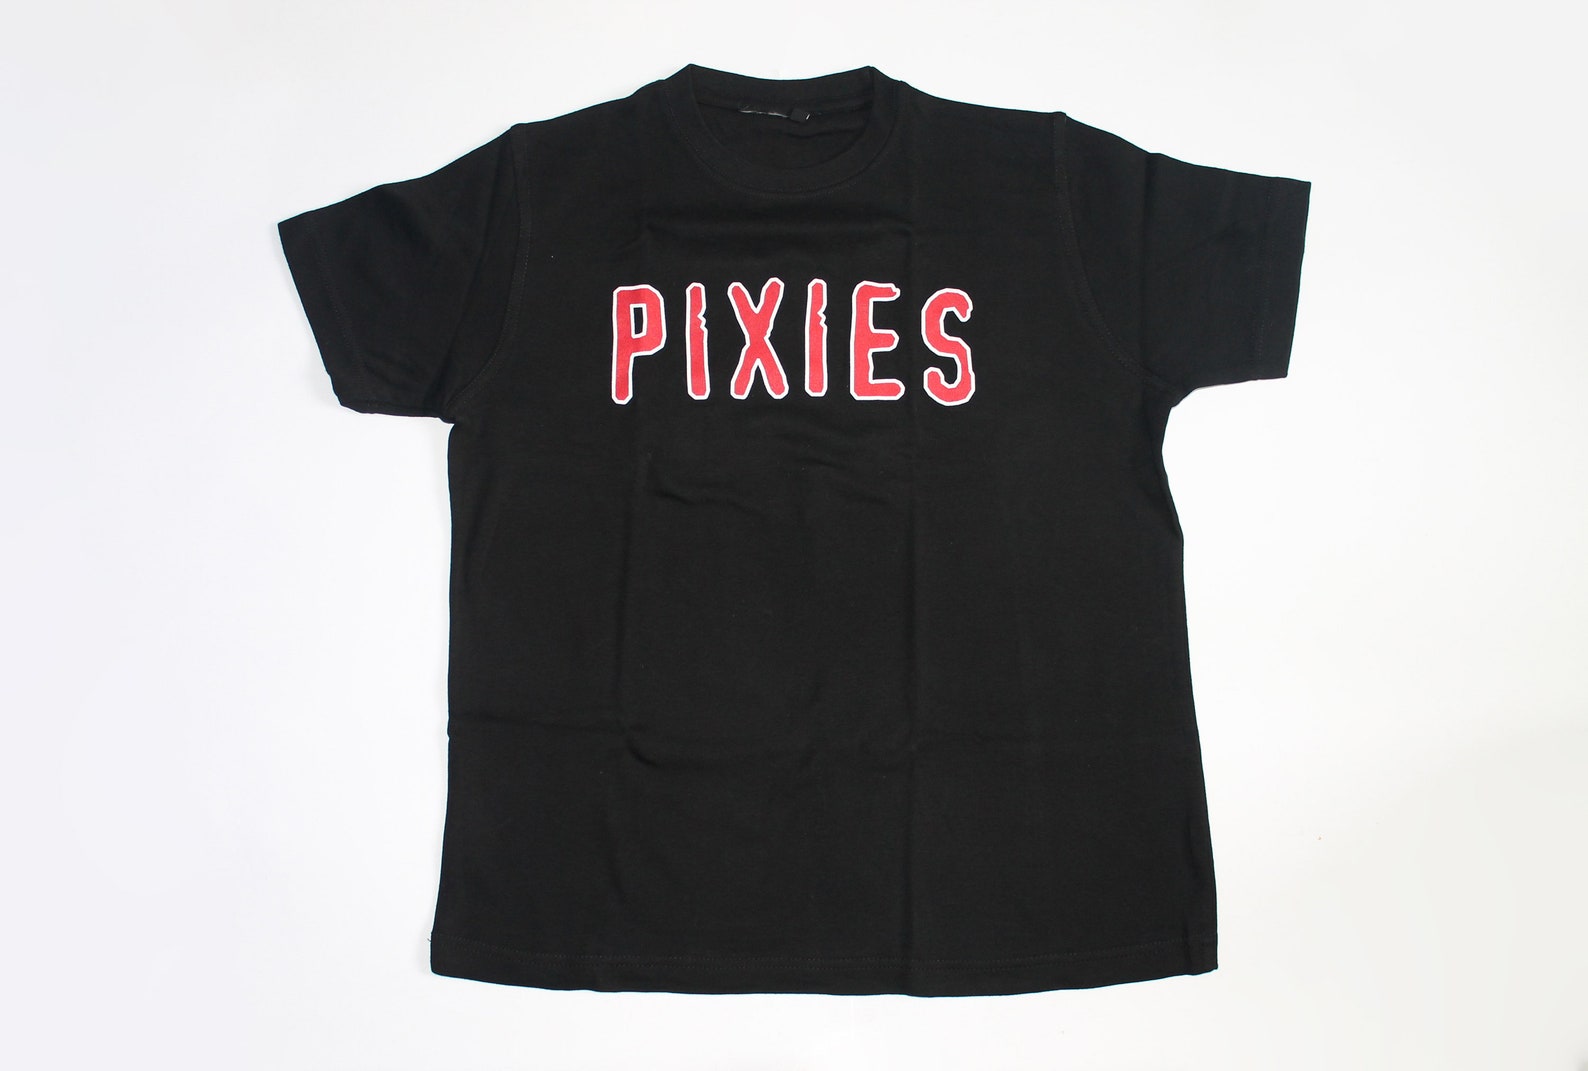 the pixies tour shirt